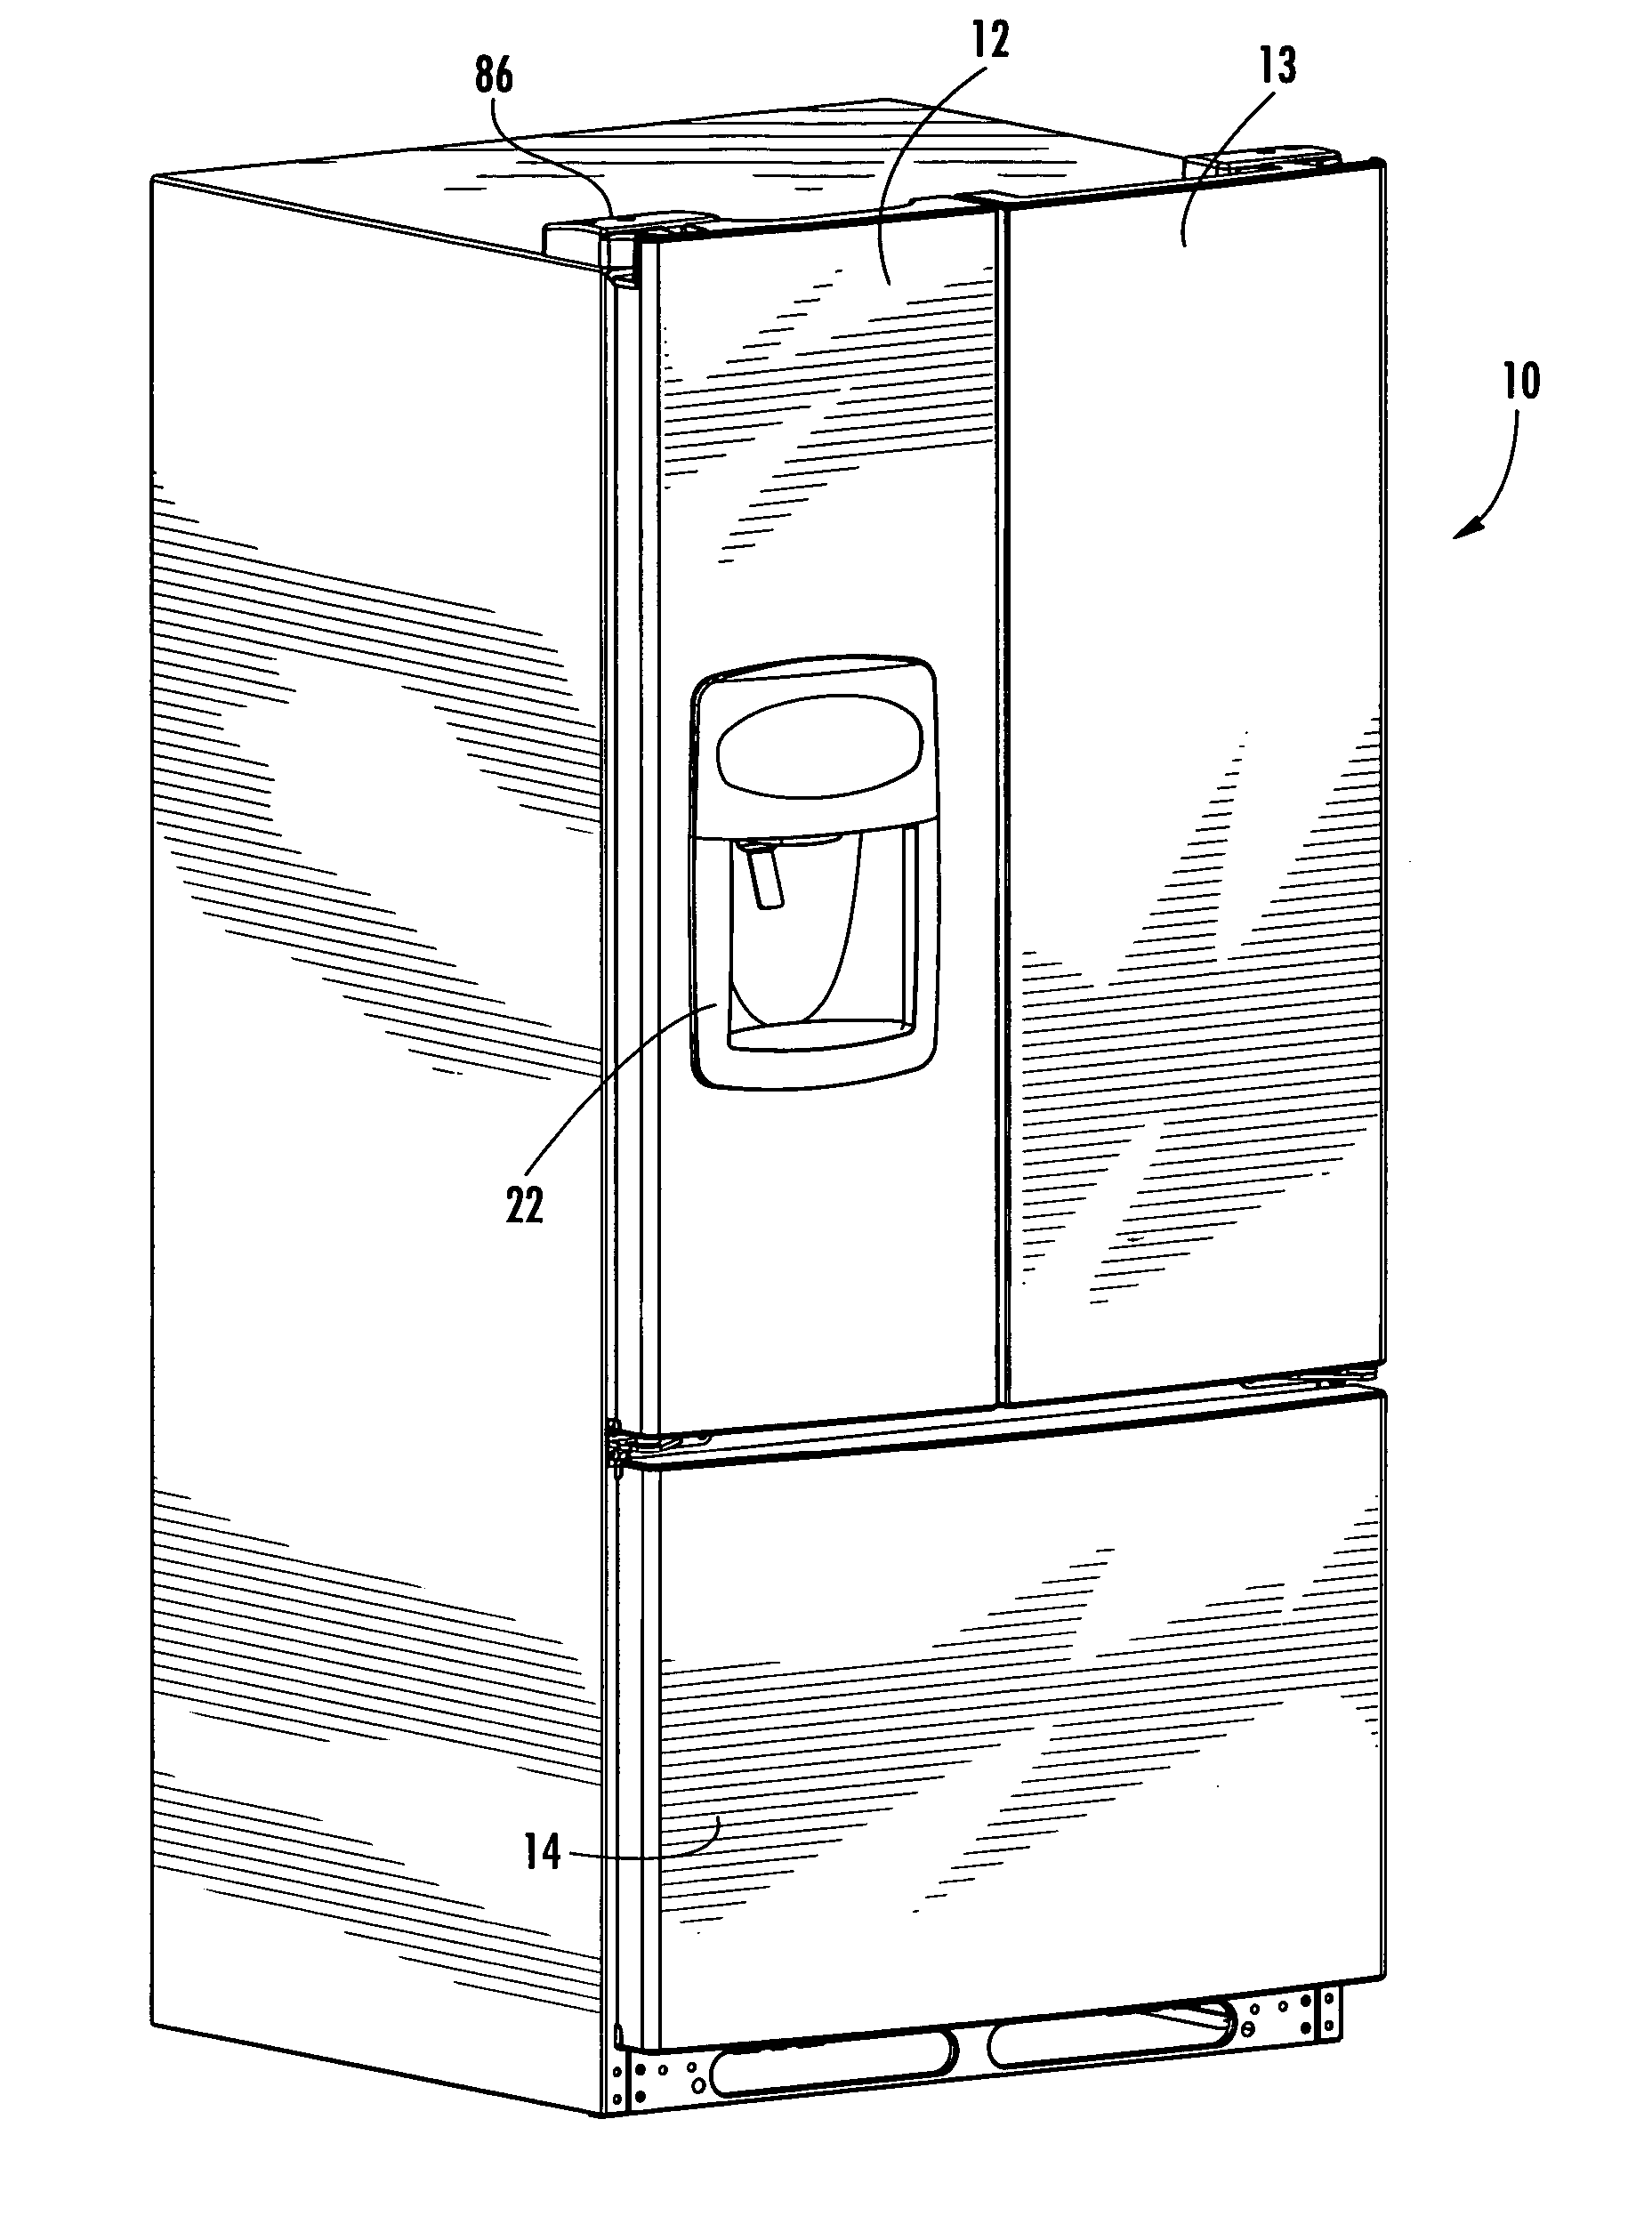 Refrigerator door with end cap